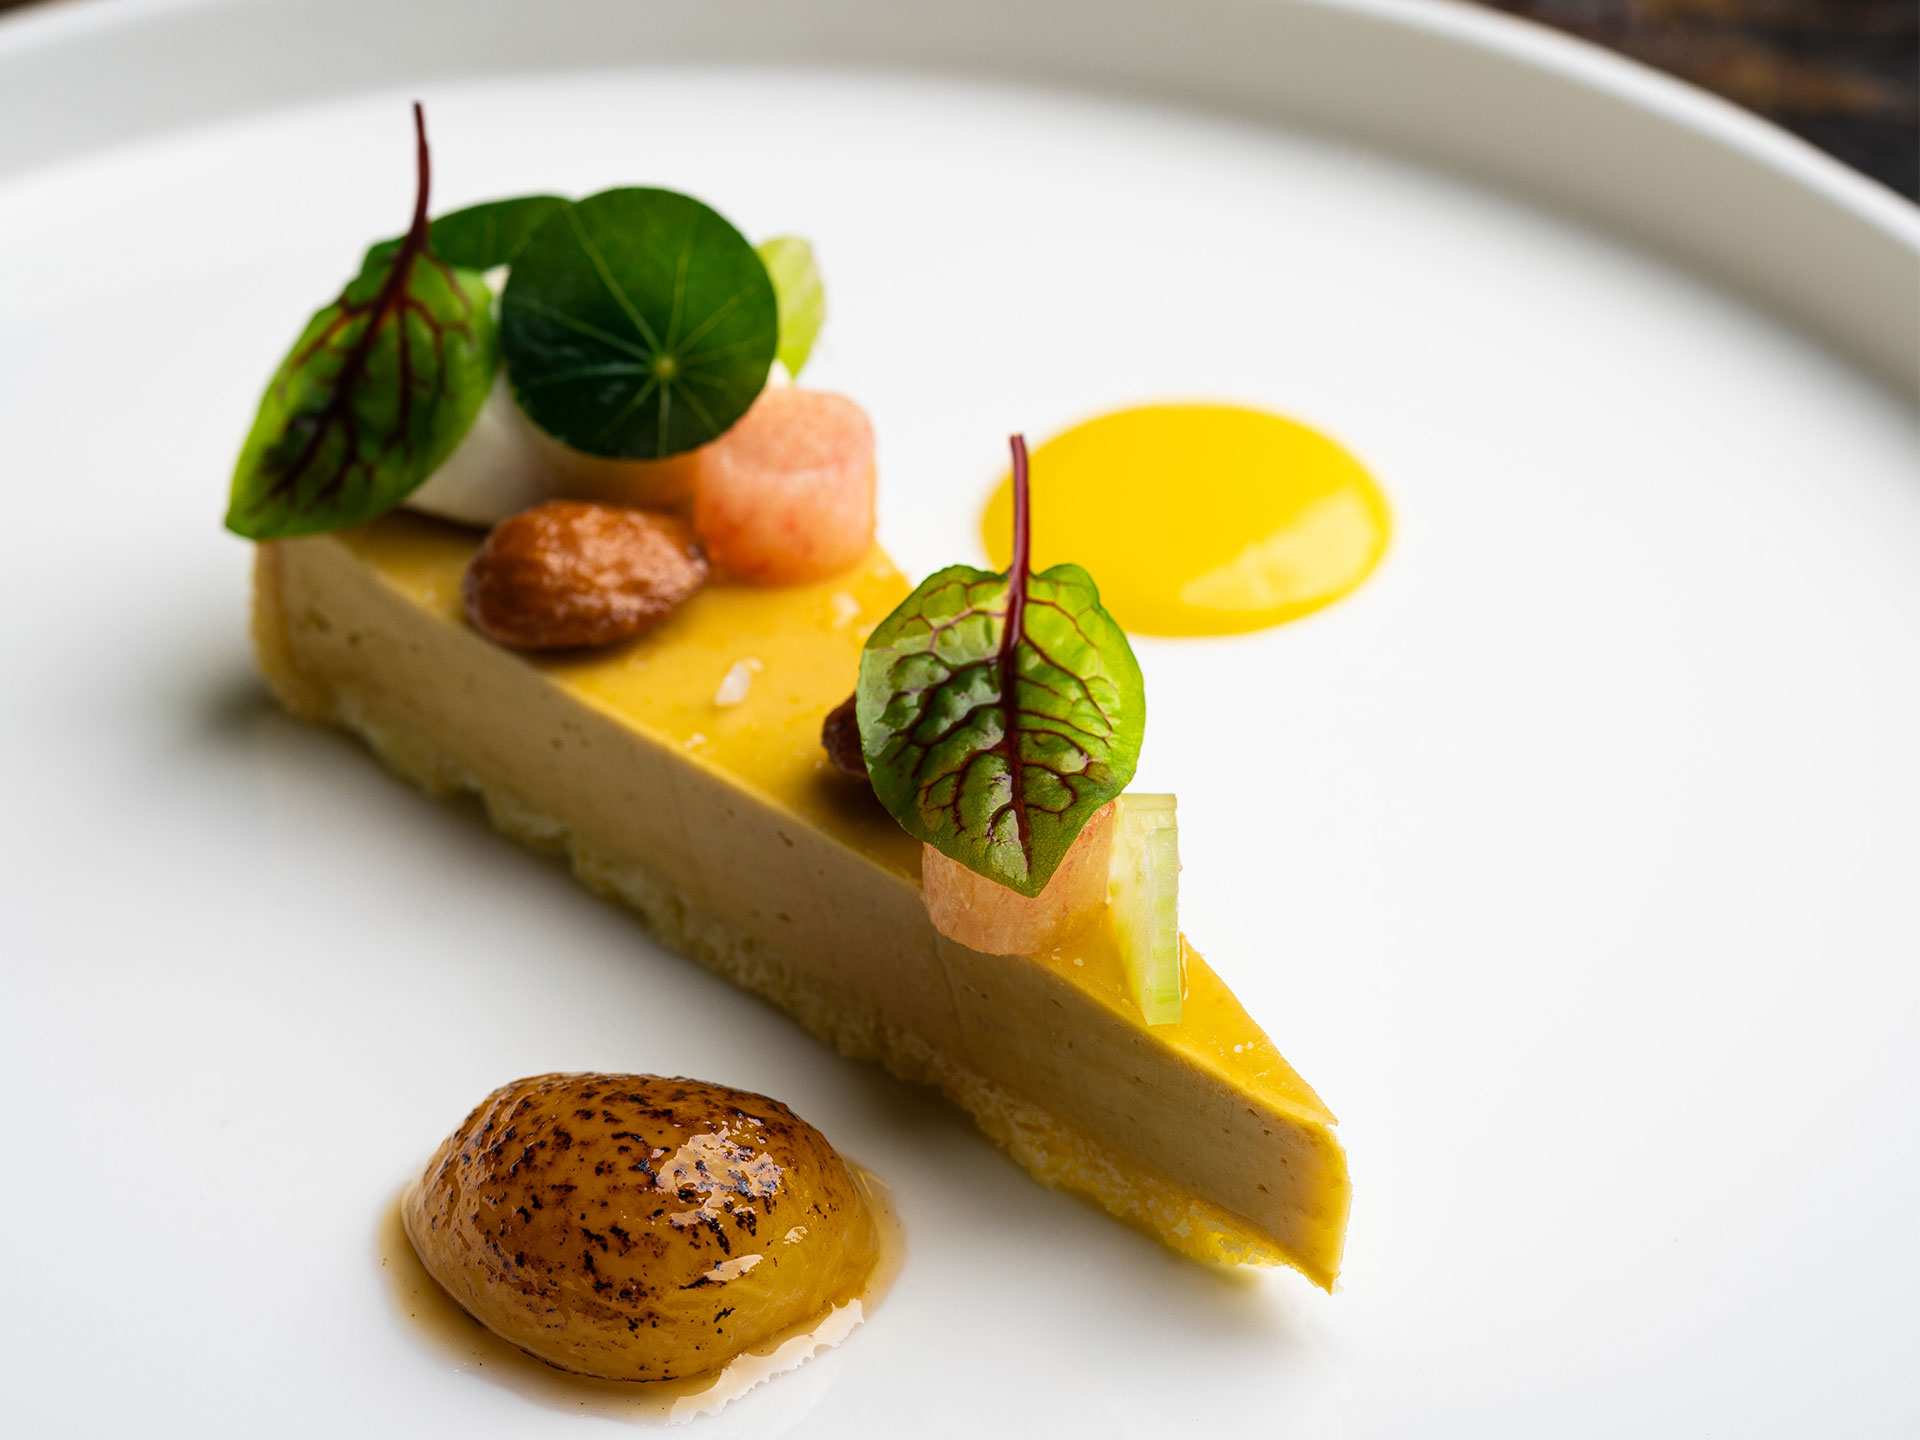 Best restaurants Toronto | A slice of foie gras pie at Alo